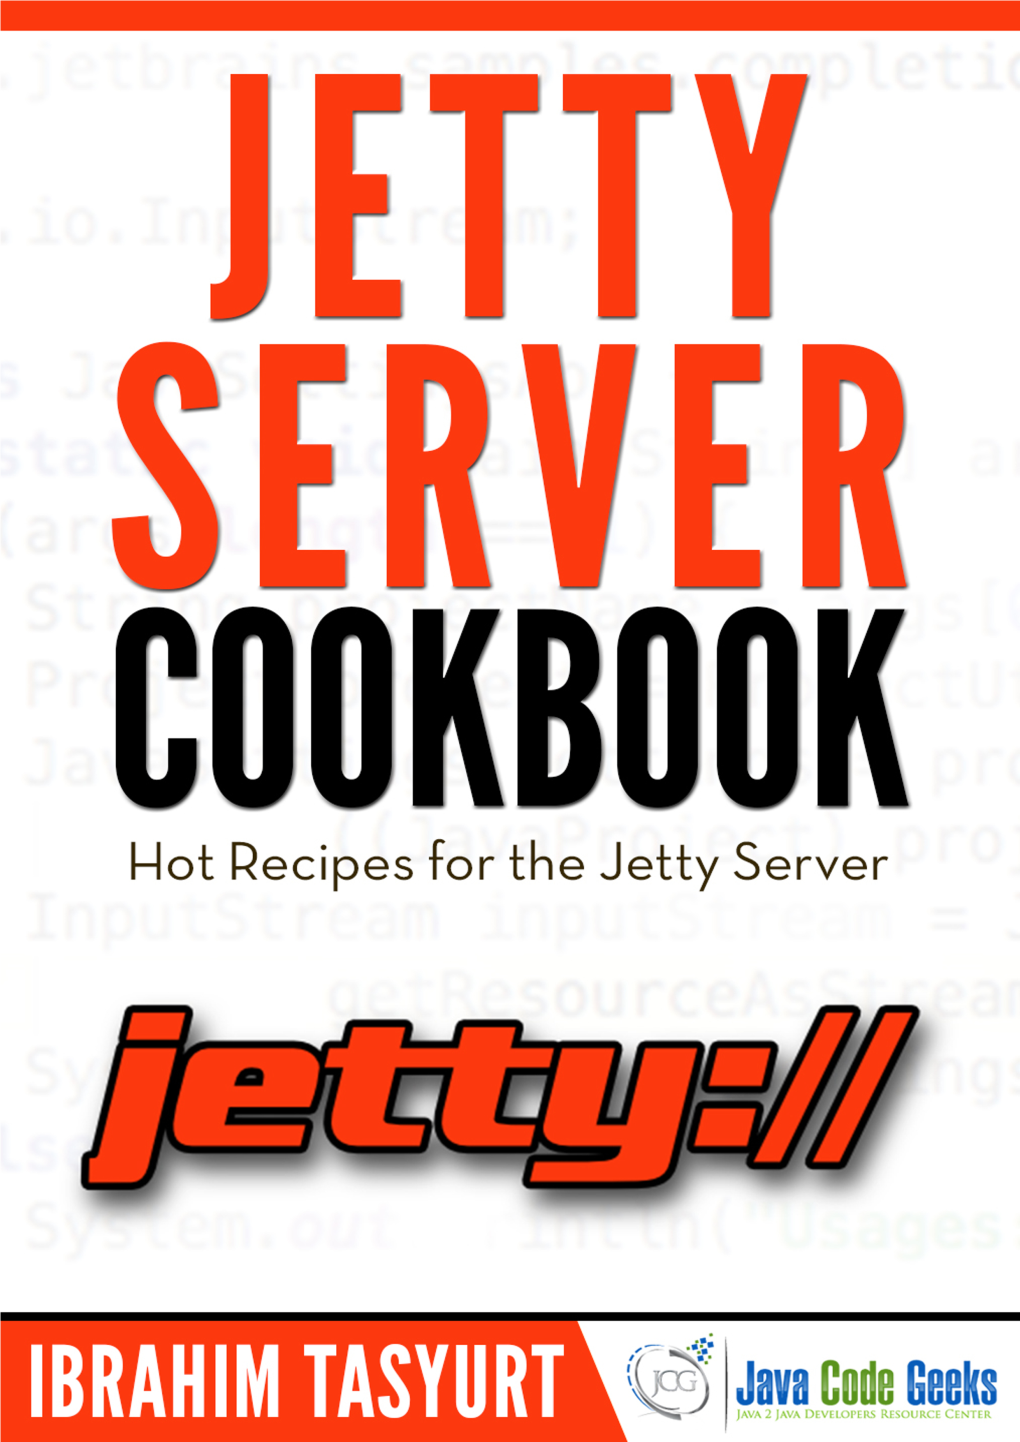 Jetty Server Cookbook I